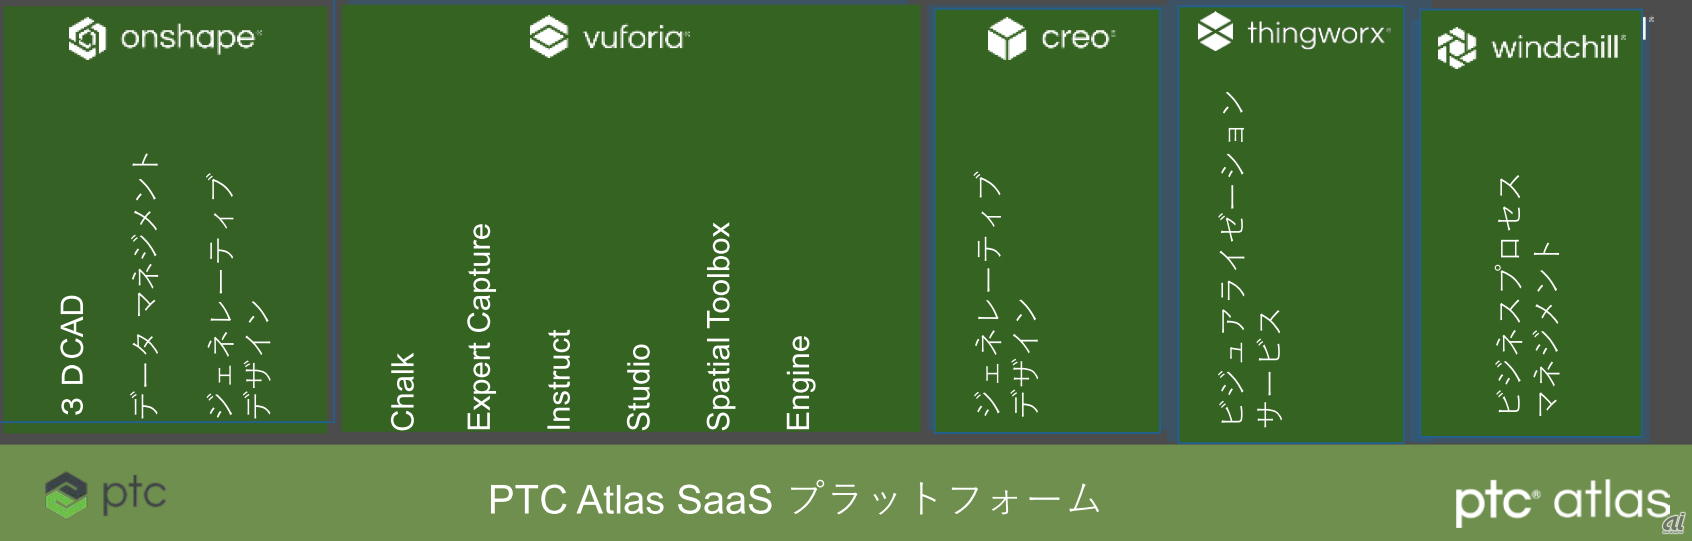 AzureなどのパブリッククラウドでSaaSで必要な共通ファンクションをまとめたミドルウェアのAtlasを載せ、その上で各種のSaaSを提供する